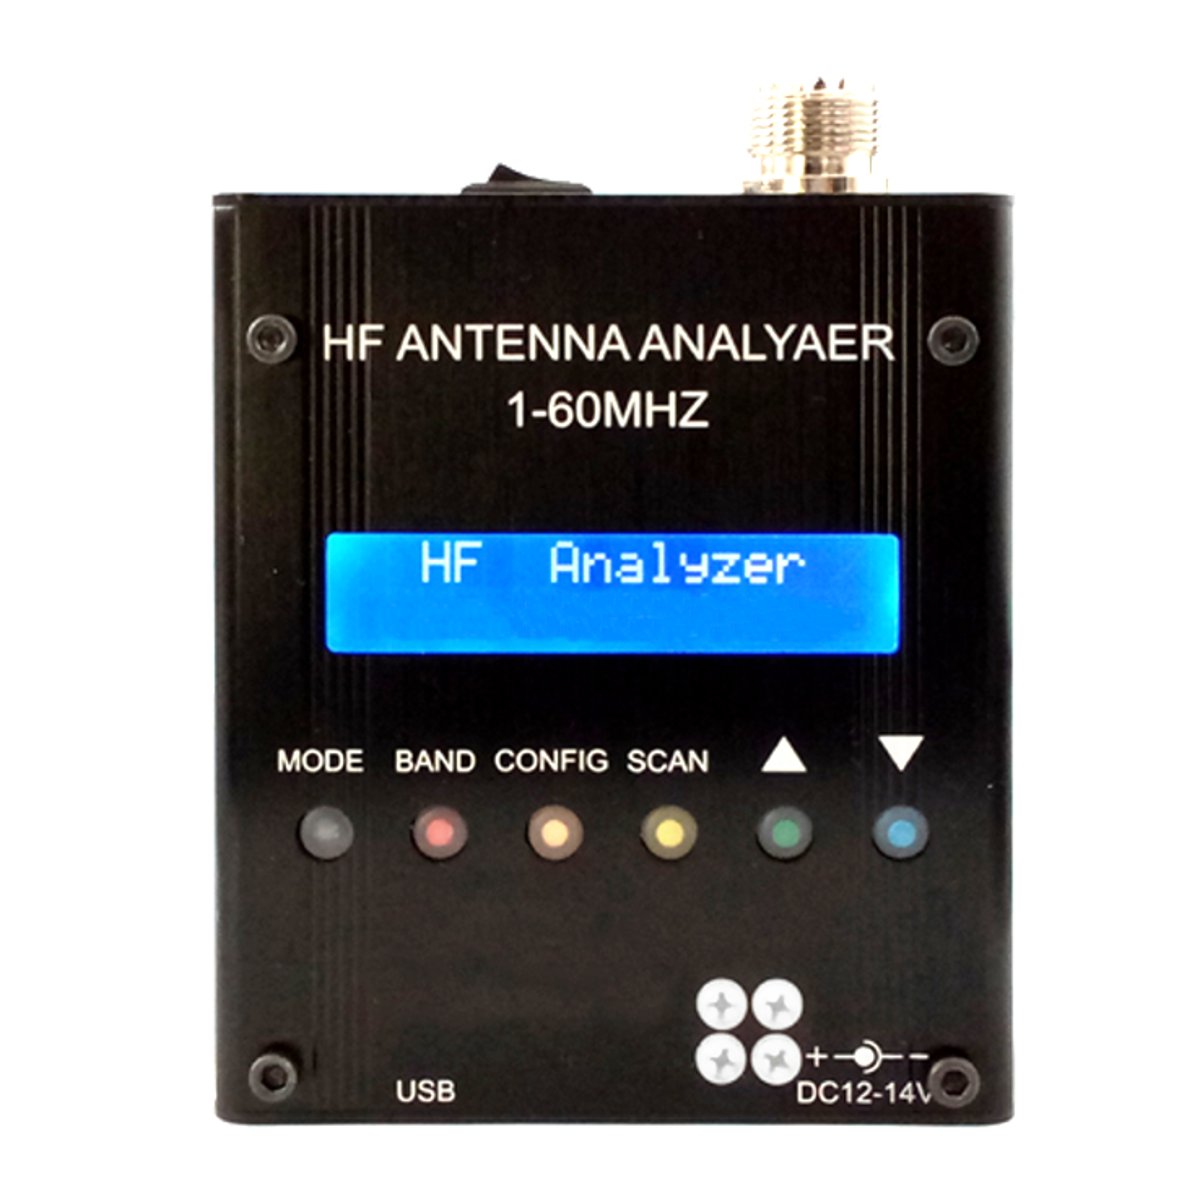 

MR300 Digital Shortwave Antenna Analyzer Meter Tester 1-60M For Ham Radio with Bluetooth